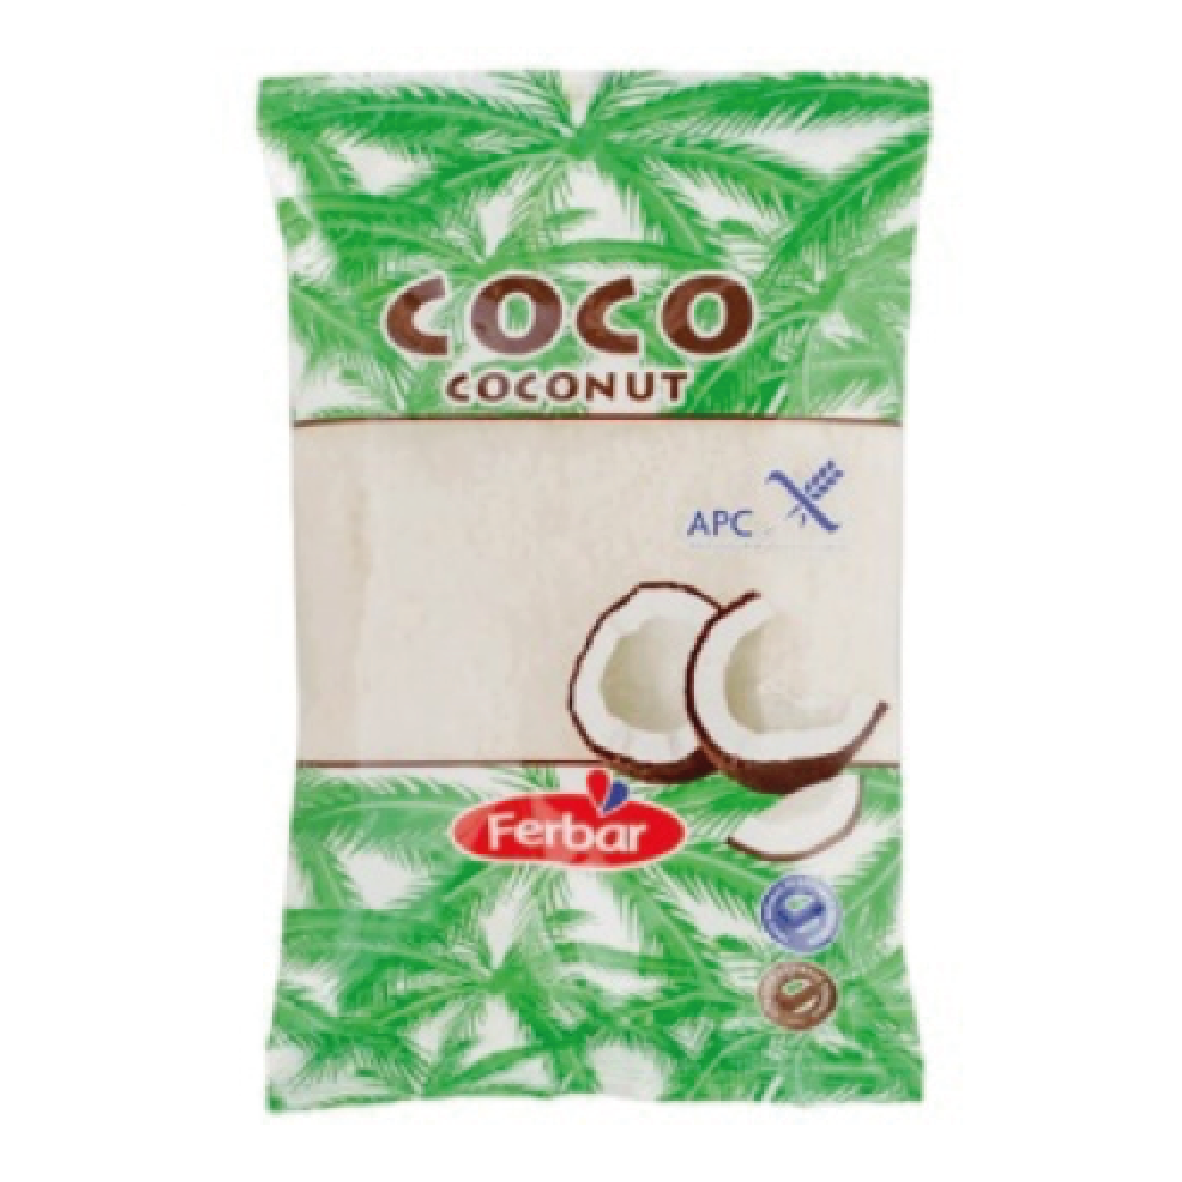 Ferbar Coco Ralado 200g